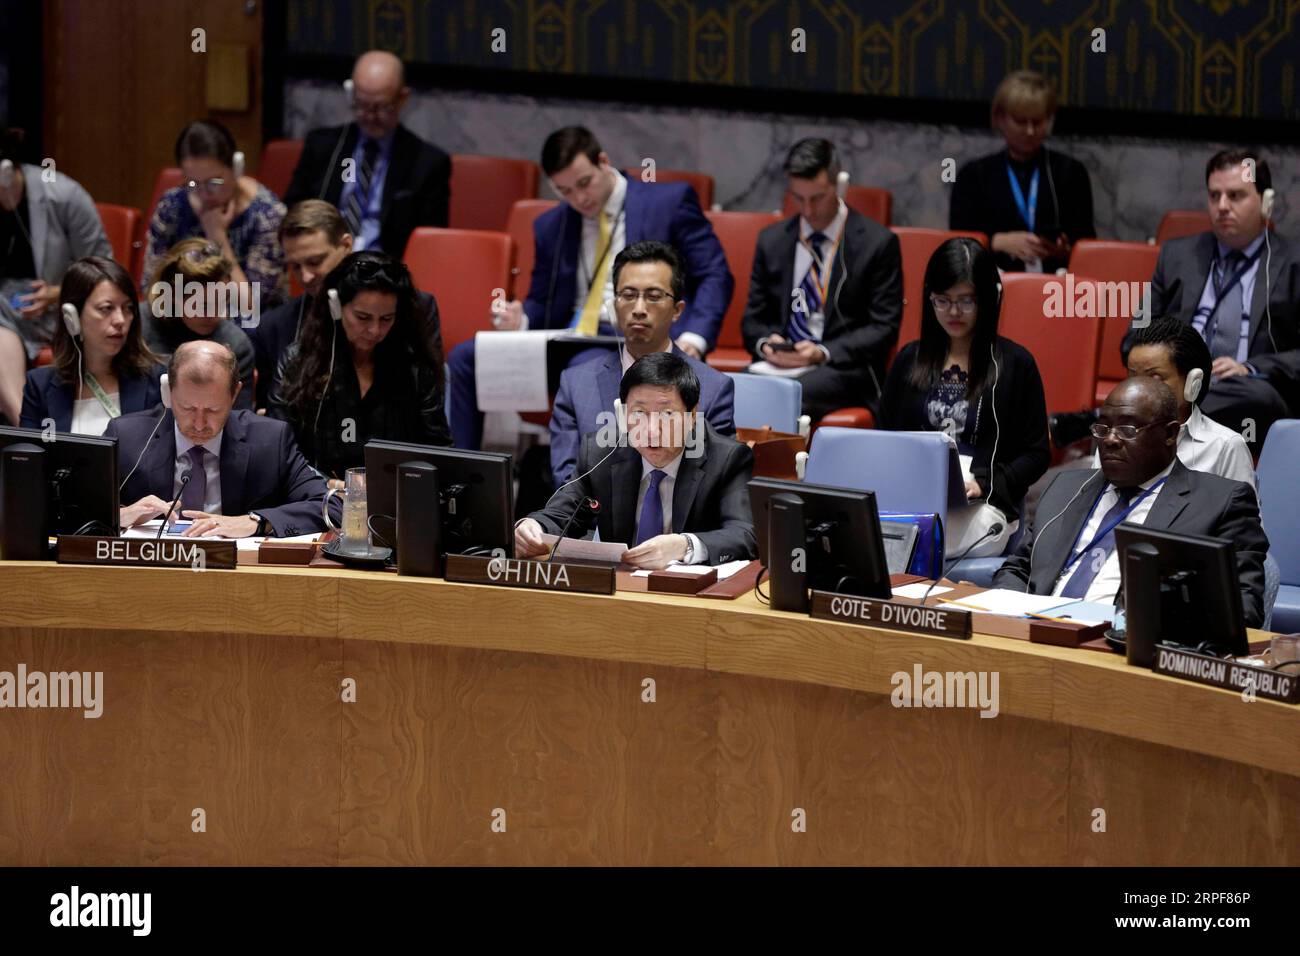 (190916) -- NAZIONI UNITE, 16 settembre 2019 -- Wu Haitao (C, fronte), Vice Rappresentante permanente della Cina presso le Nazioni Unite, partecipa a una riunione del Consiglio di sicurezza sulla situazione nello Yemen, presso la sede delle Nazioni Unite a New York, 16 settembre 2019. Wu Haitao lunedì ha chiesto la de-escalation della tensione nello Yemen e il ritorno alla diplomazia per una soluzione politica. ) CONSIGLIO DI SICUREZZA DELLE NAZIONI UNITE-YEMEN-INVIATO CINESE LIXMUZI PUBLICATIONXNOTXINXCHN Foto Stock